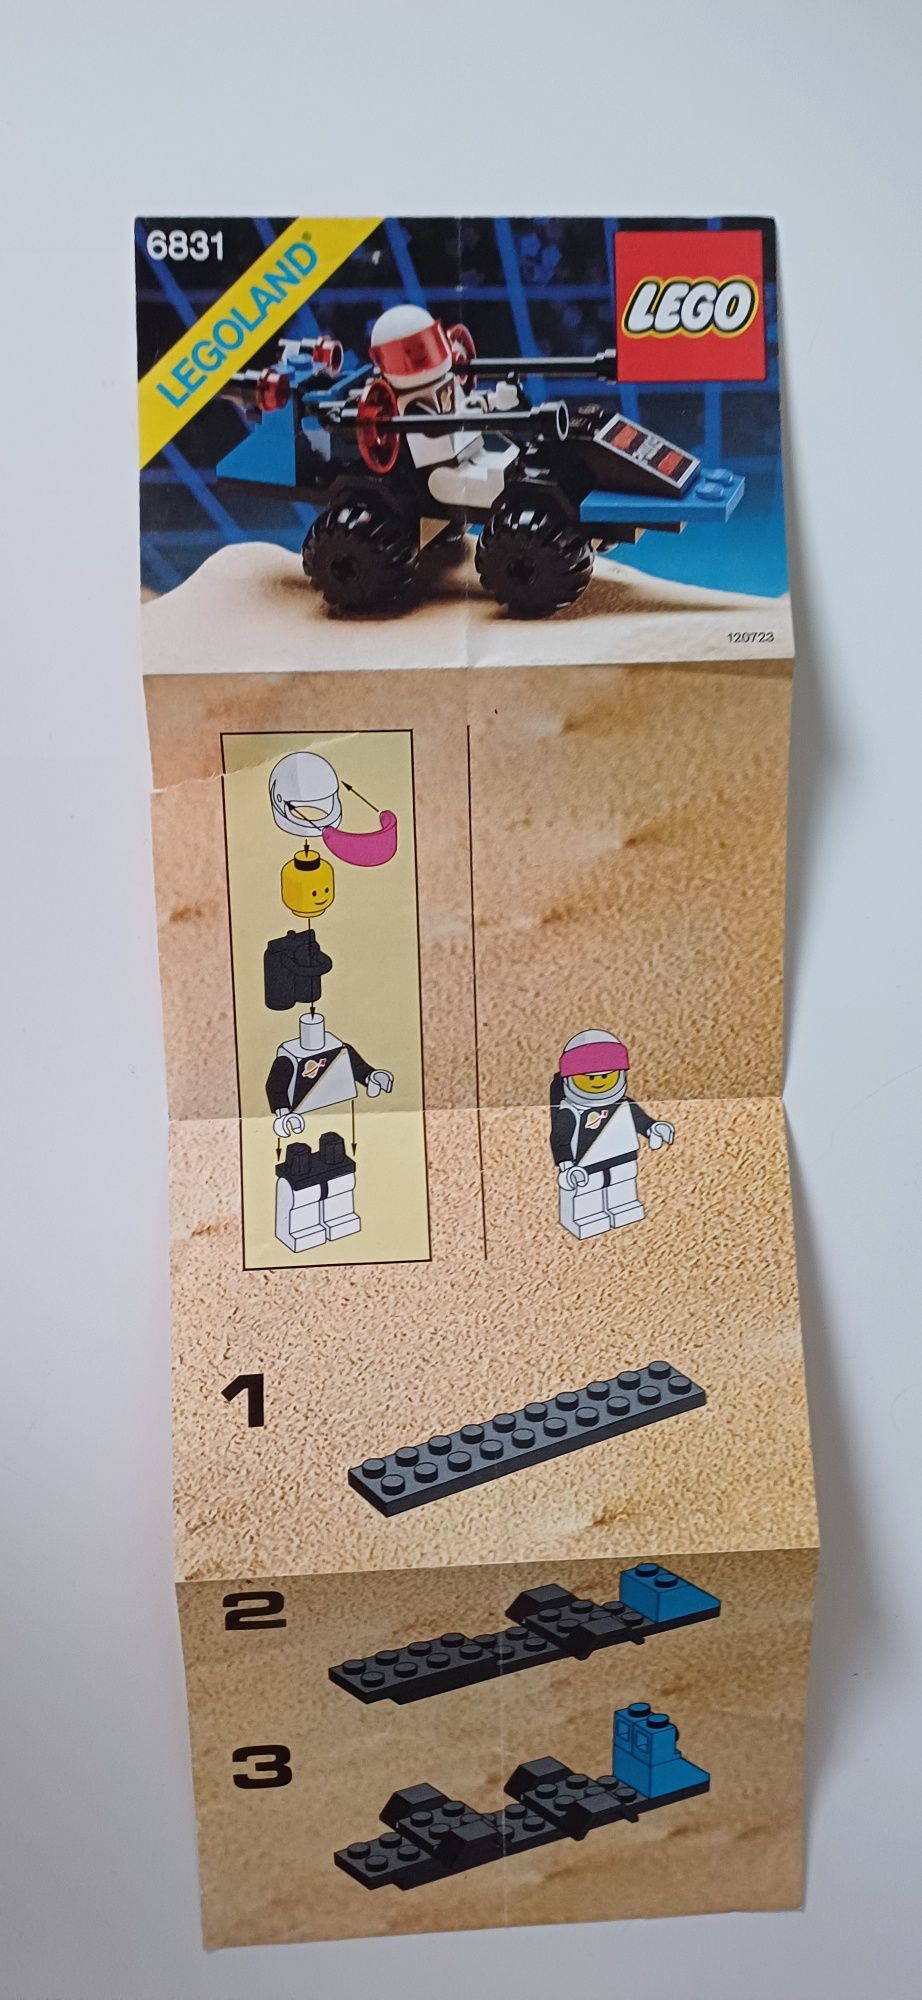 Lego Space 6831 - Message Decoder